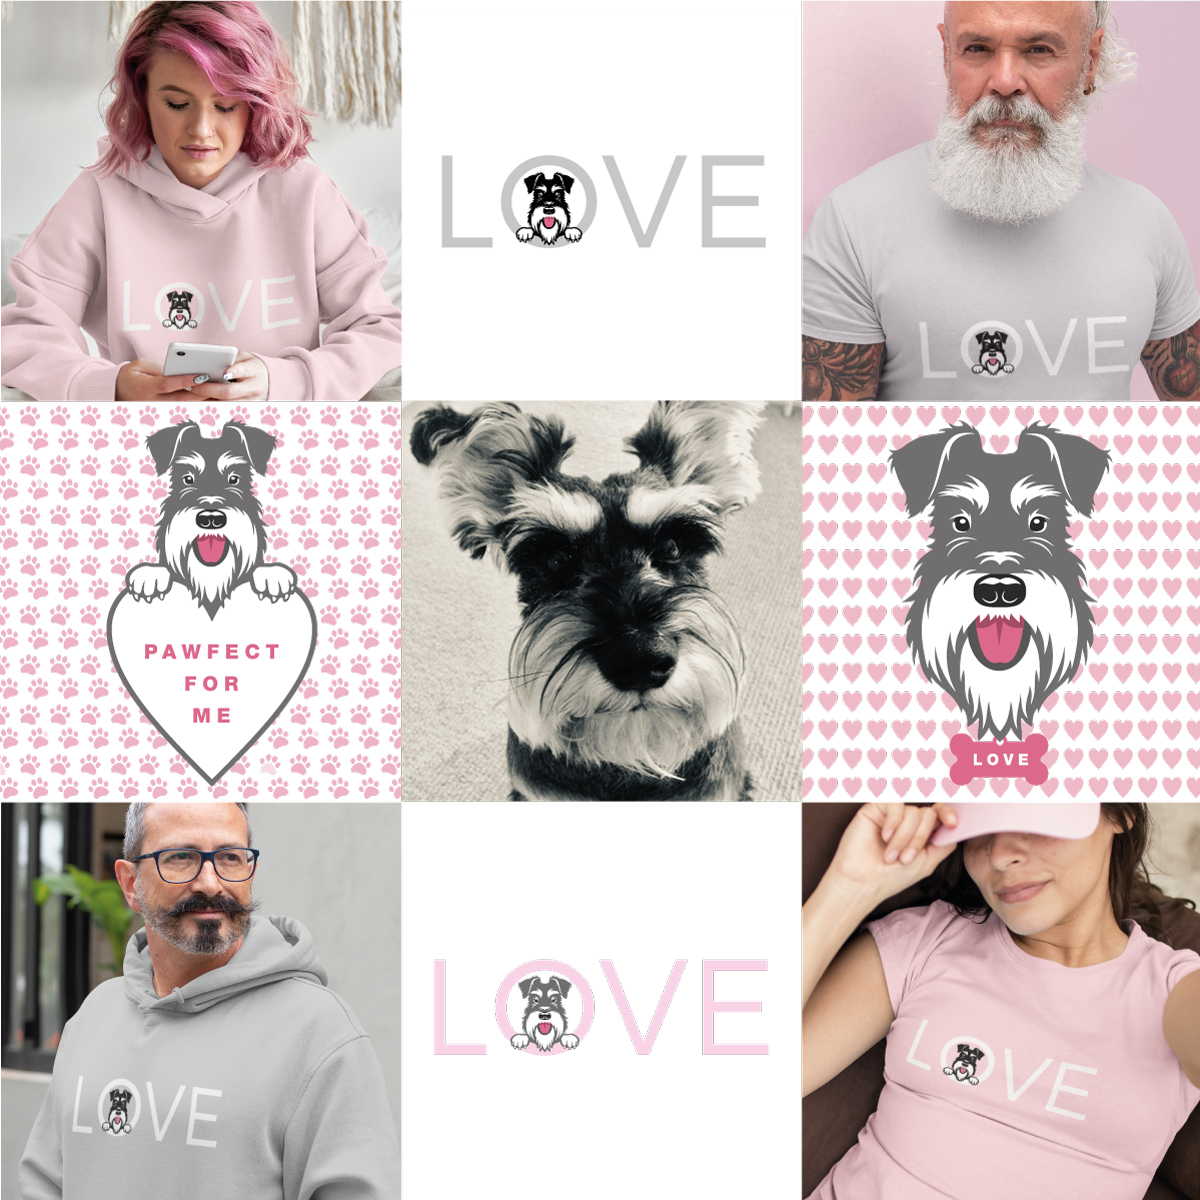 Valentine montage image showing LOVE designs